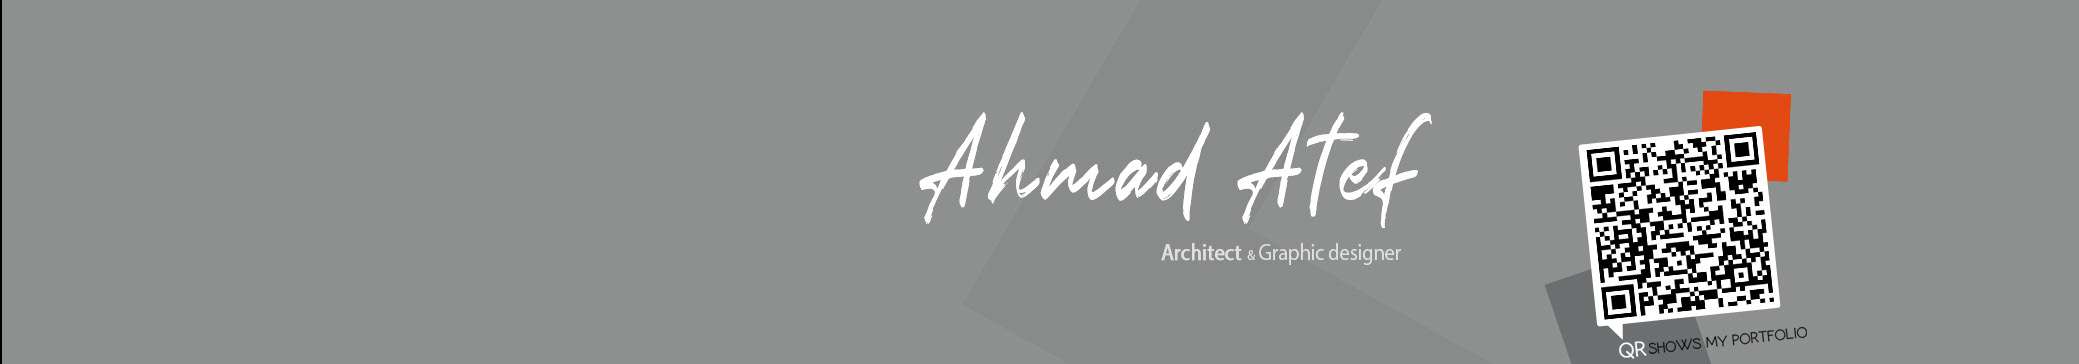 Banner de perfil de Ahmad Atef